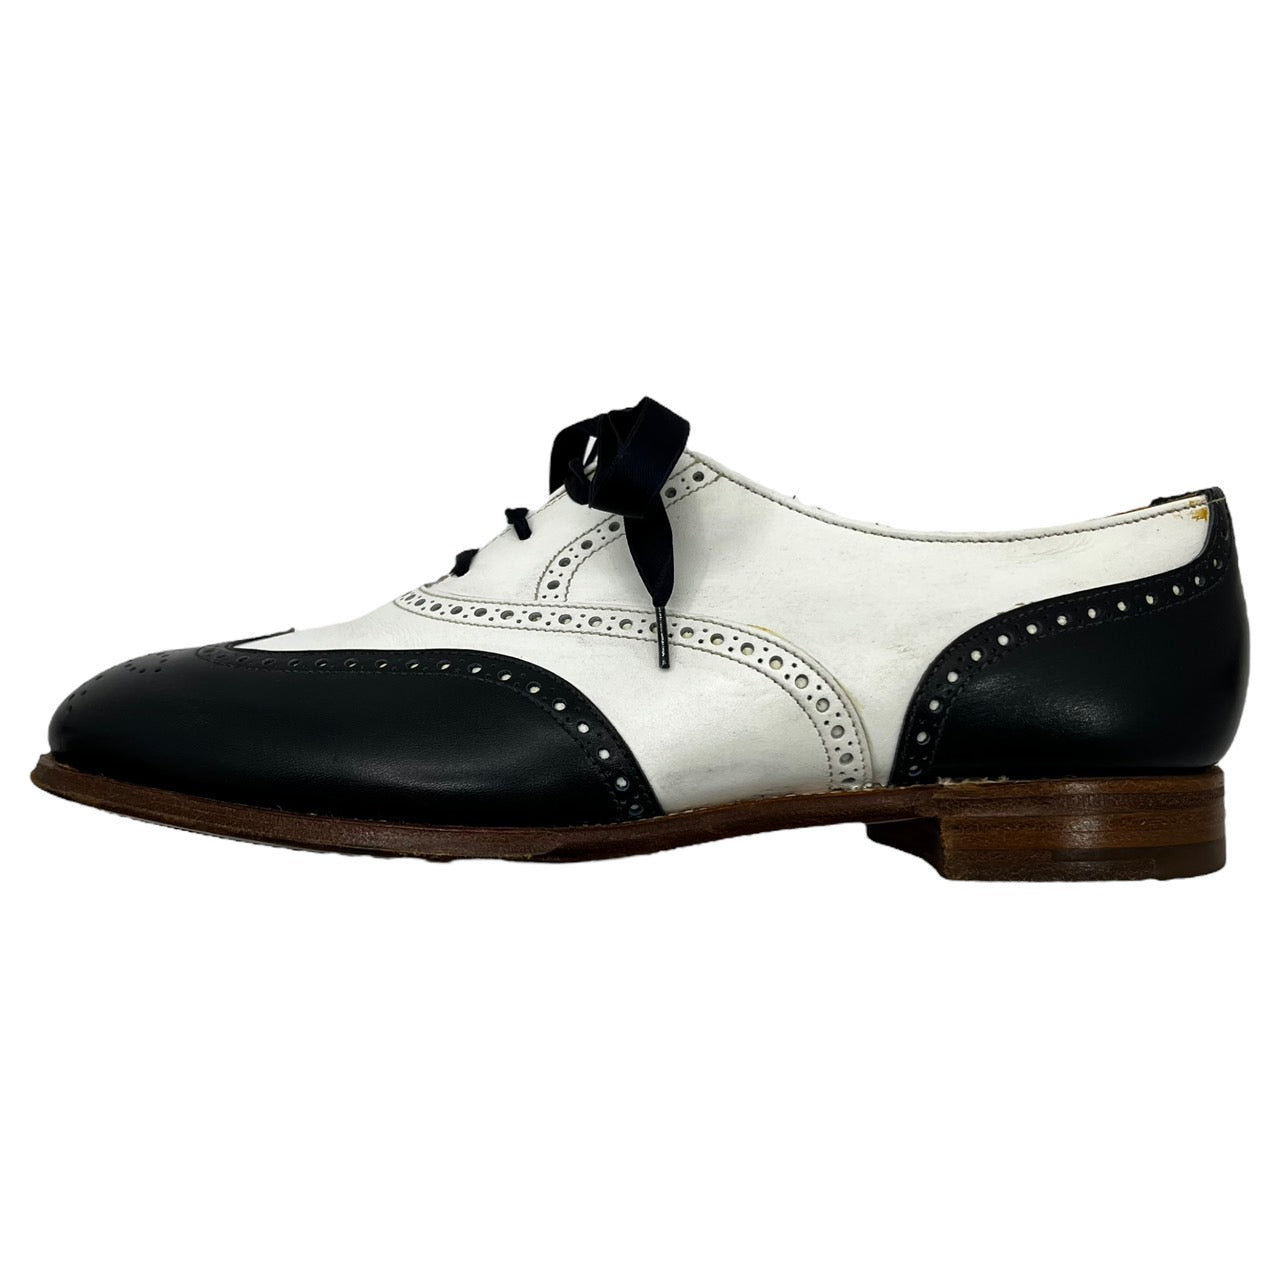 CROCKETT&JONES(クロケット&ジョーンズ) 「JENNY」 bicolor leather shoes バイカラー レザーシューズ 本革 4618・8033・07 SIZE 5C(23.5～24.0cm程度) ホワイト×ネイビー 613LAST 箱付